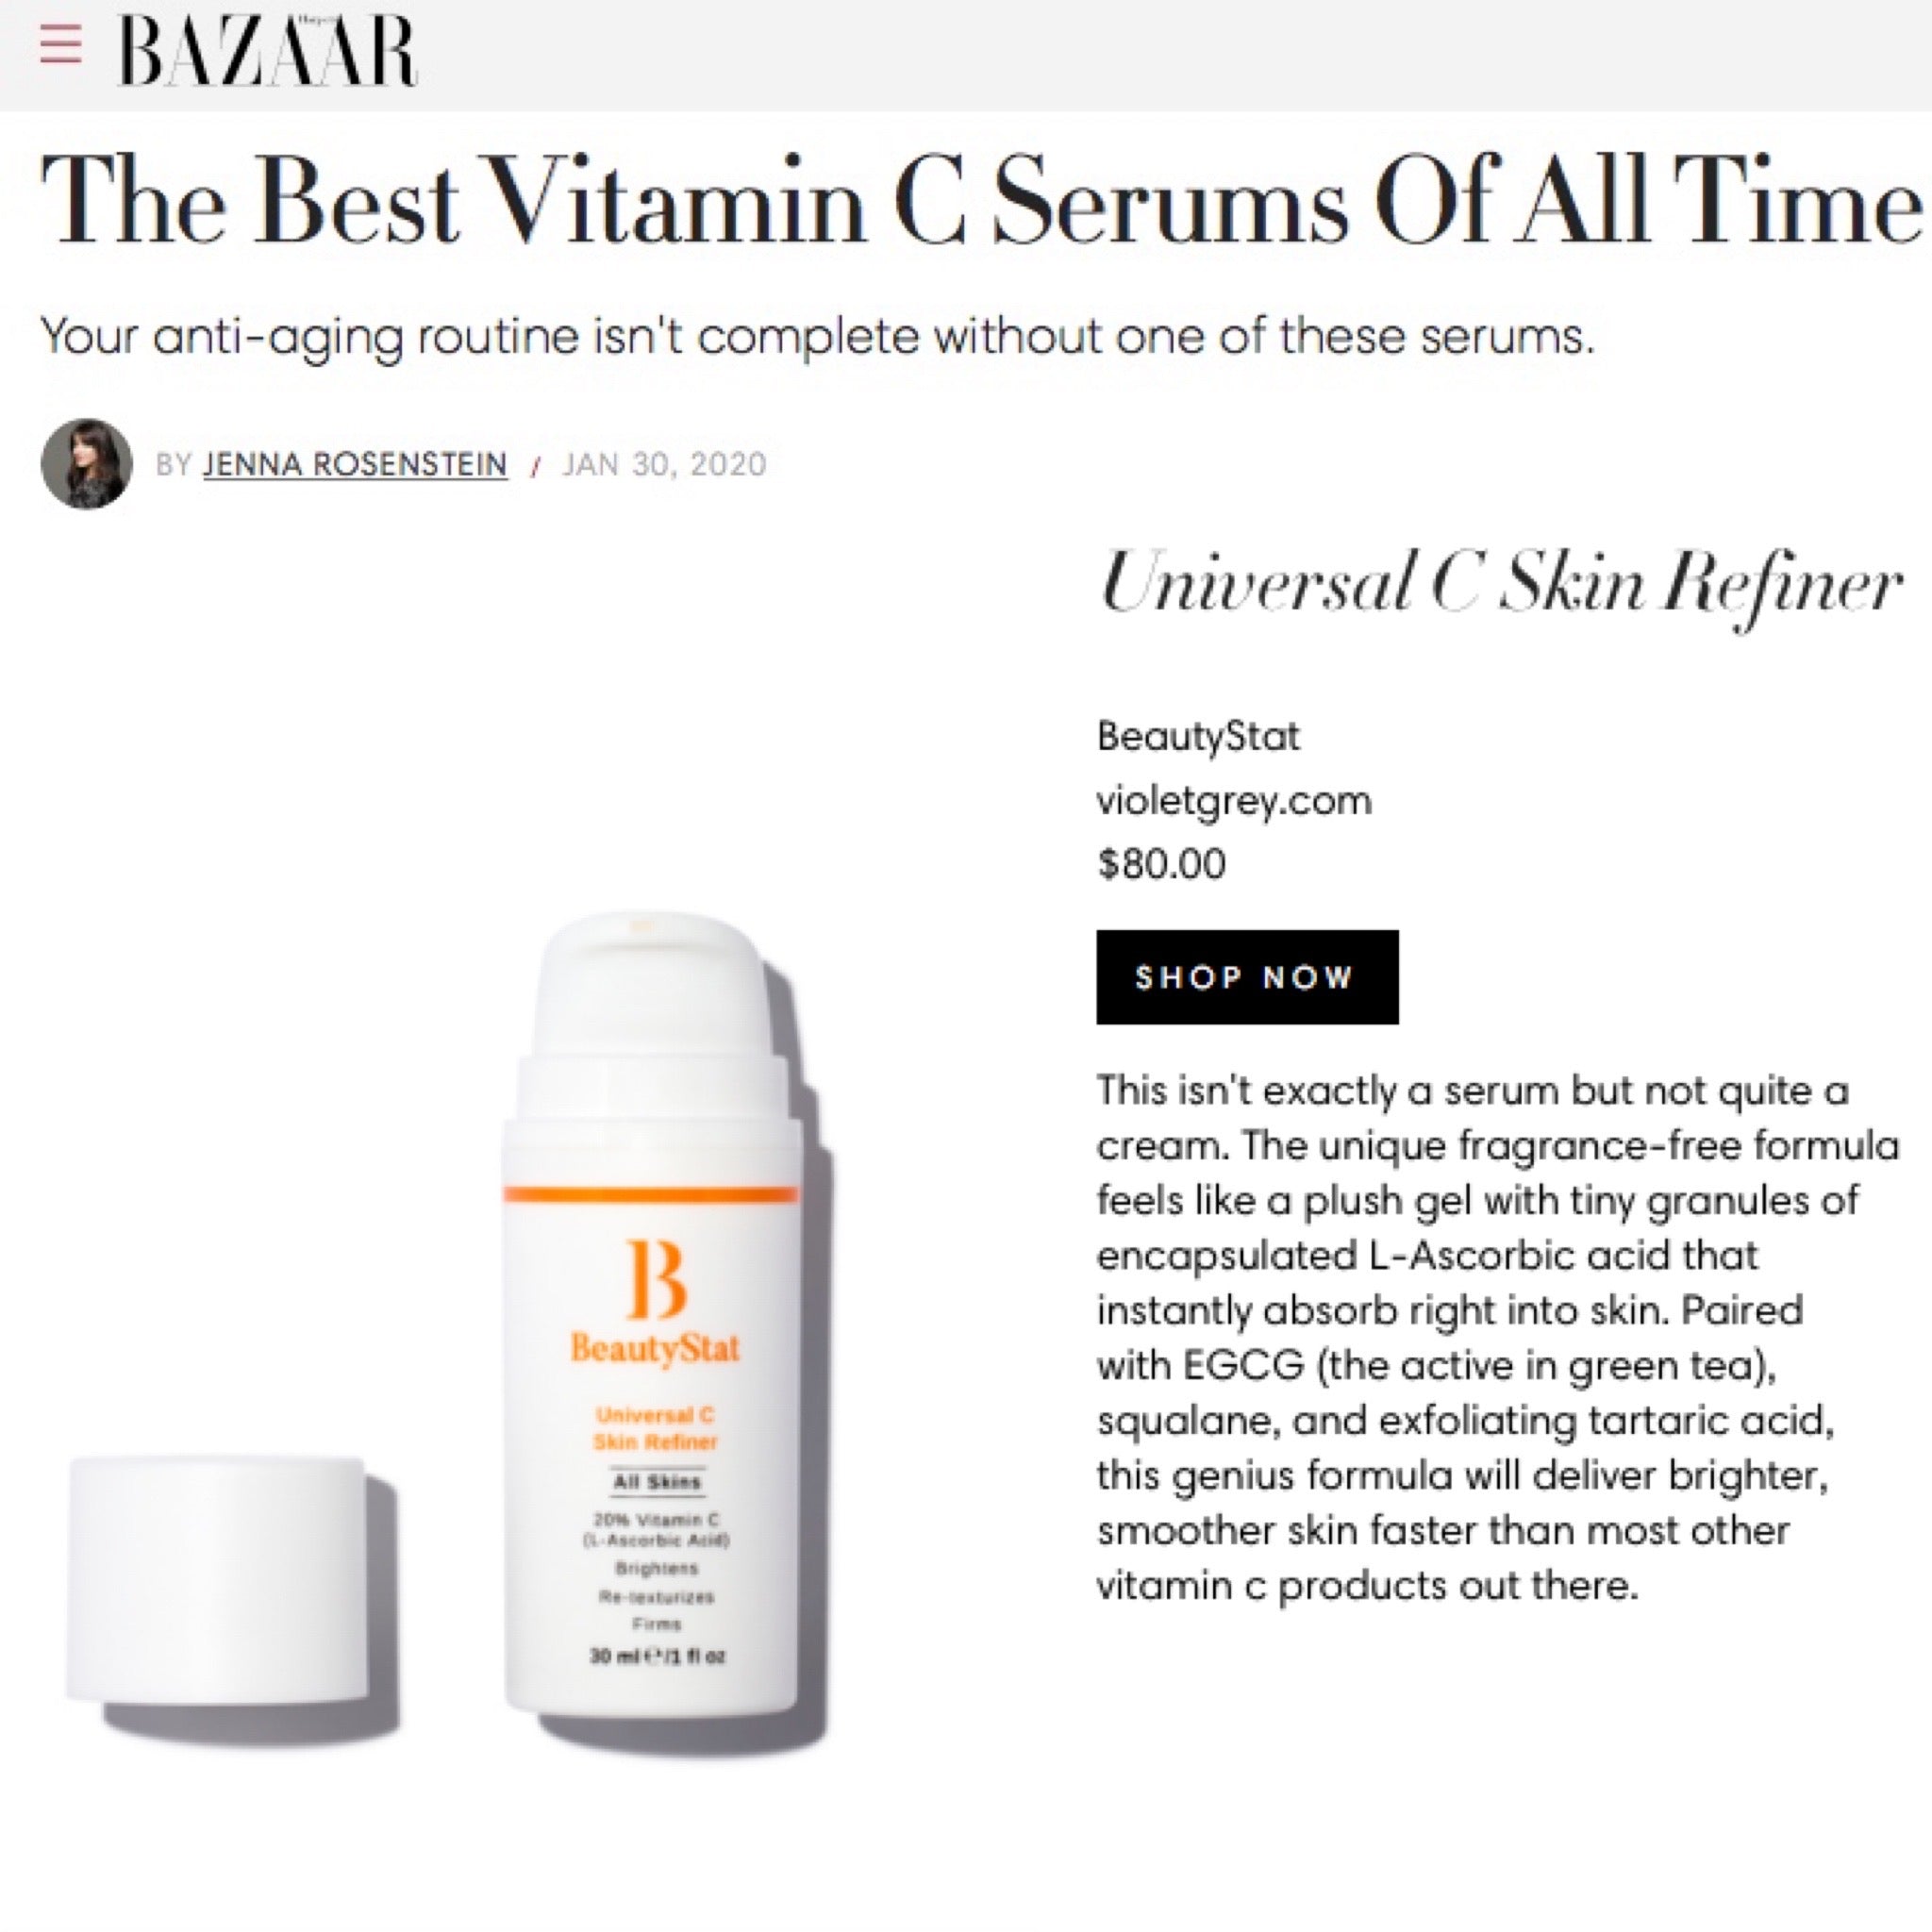 beautystat universal c skin refiner best vitamin c serum harpers bazaar